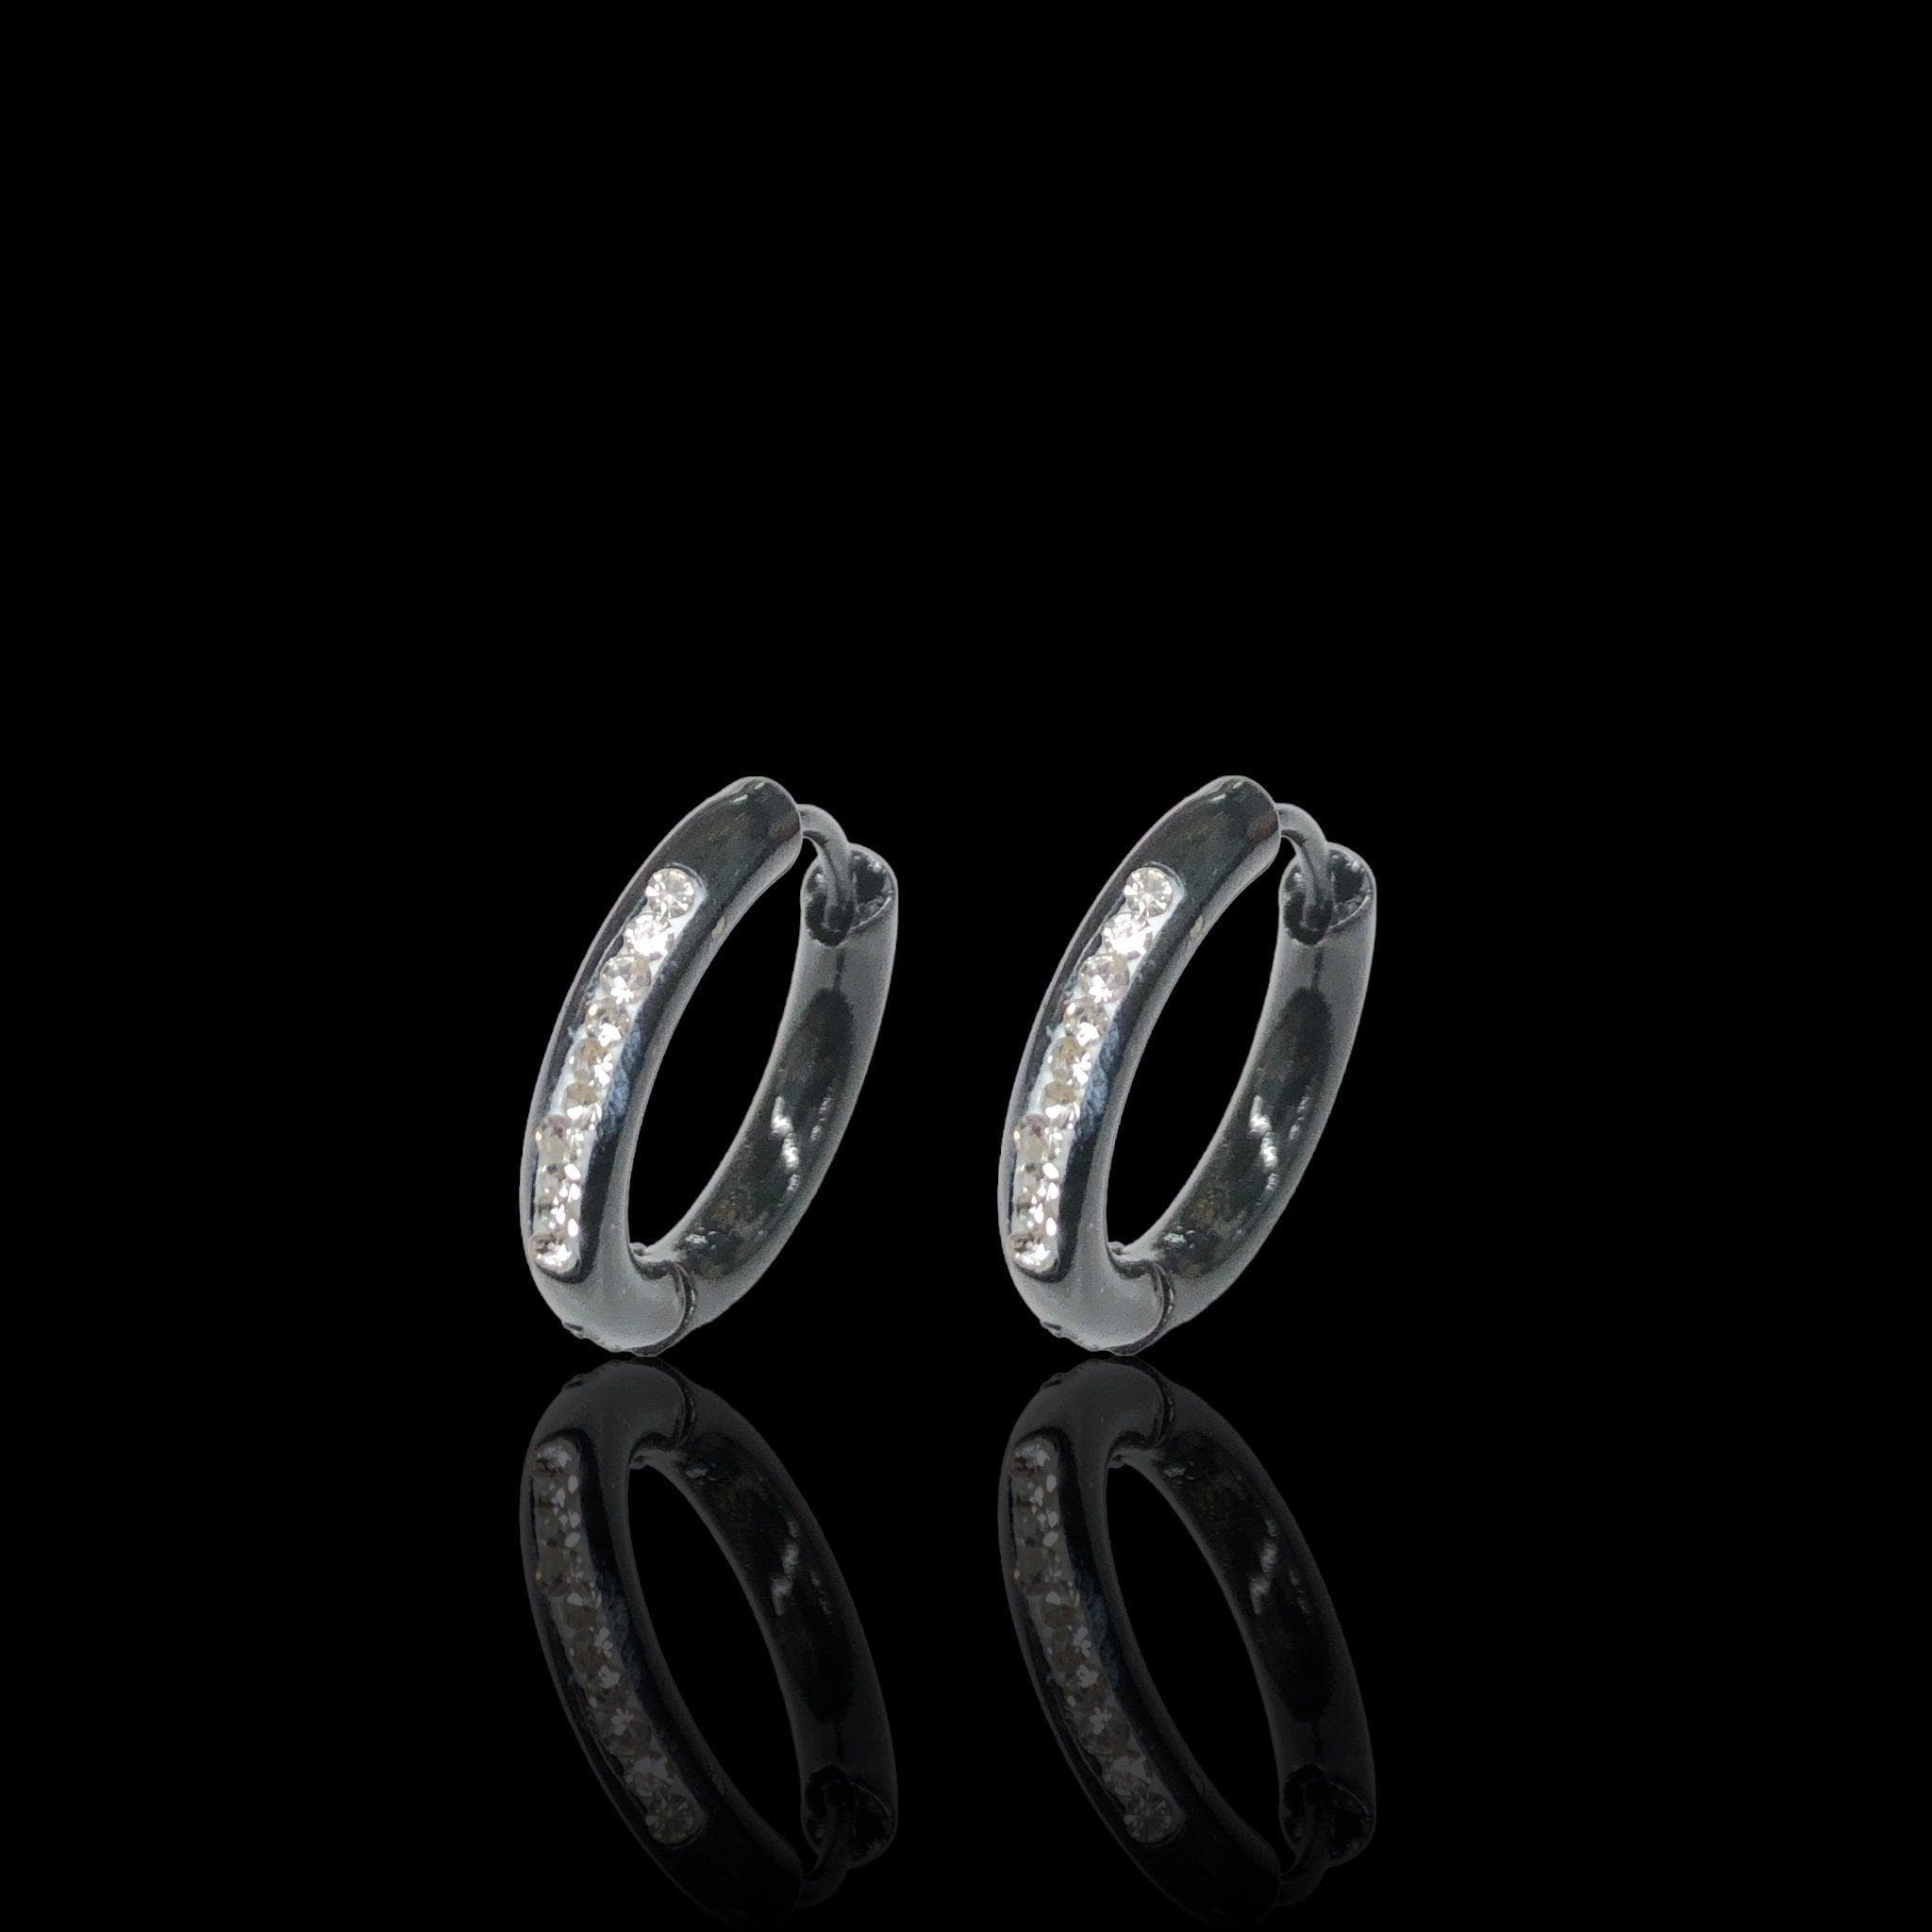 OLE 0621 316L Stainless Steel Minimalist CZ Huggie Earrings